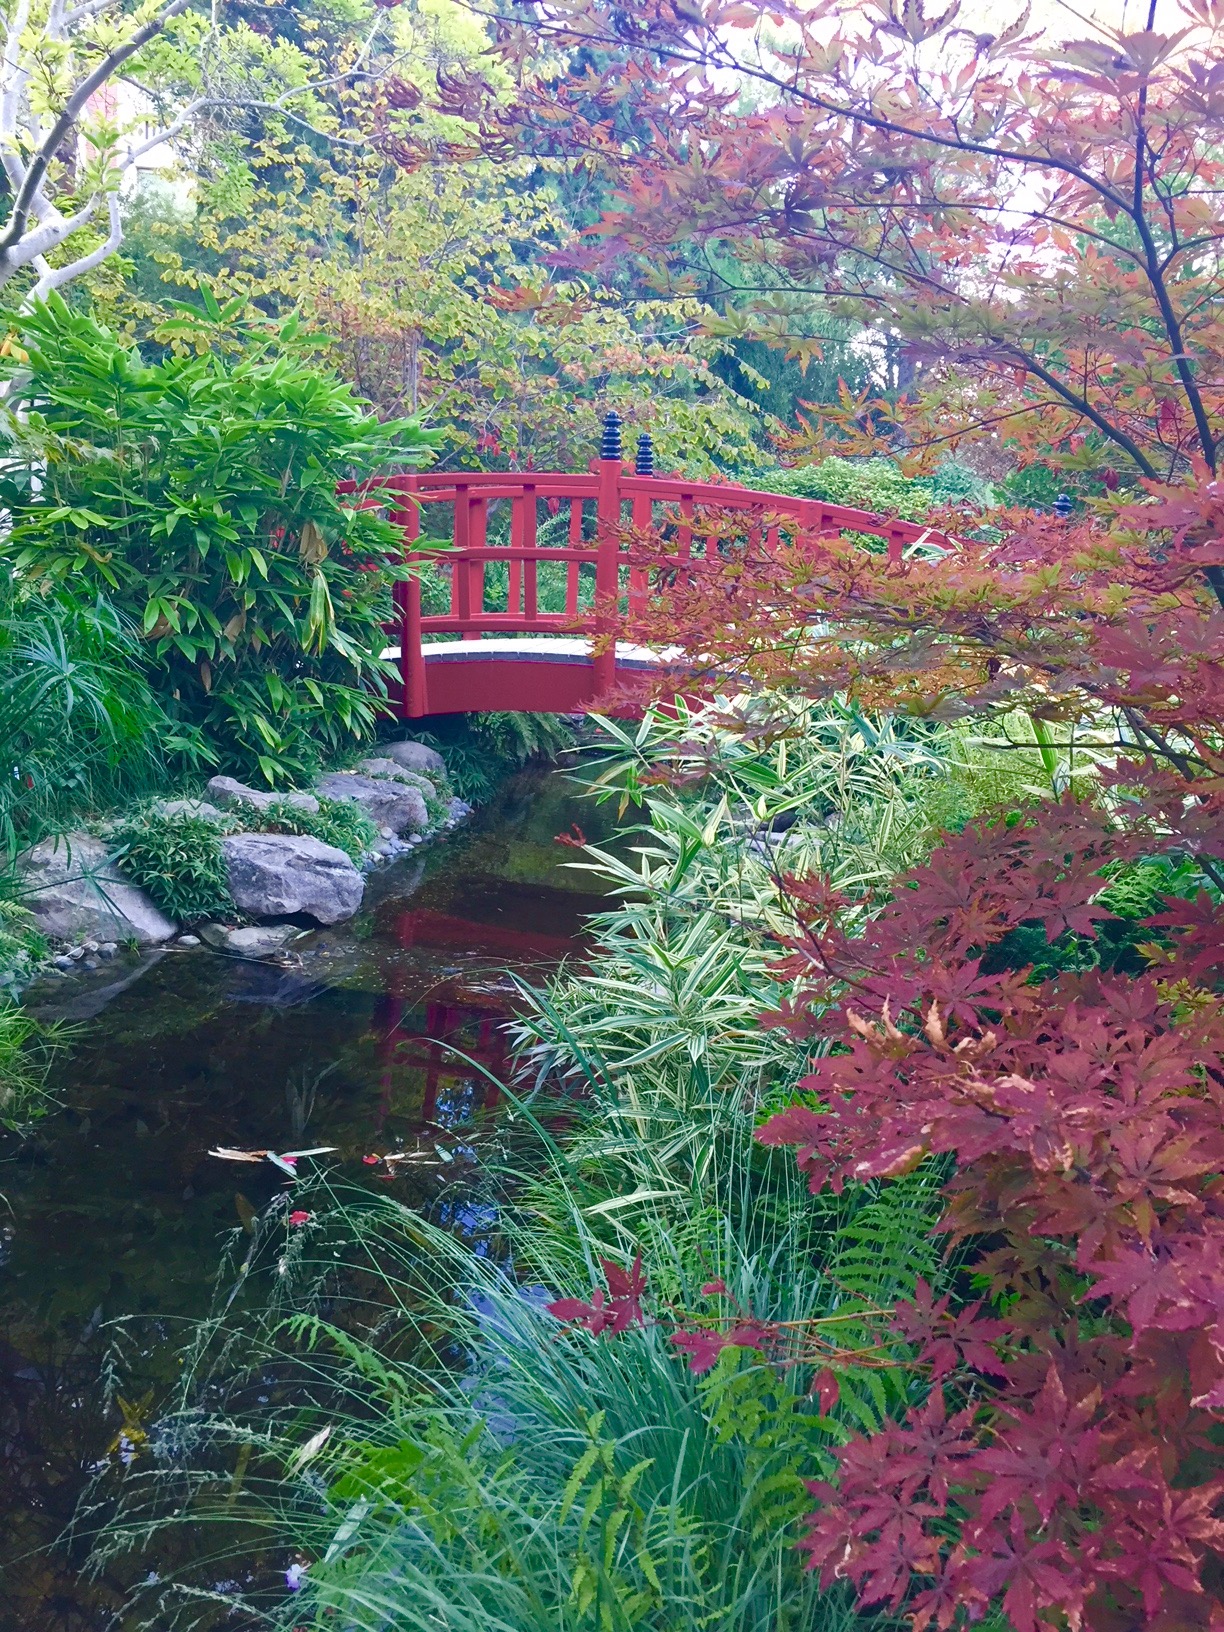 Le petit pont du jardin zen, à Rueil-Malmaison